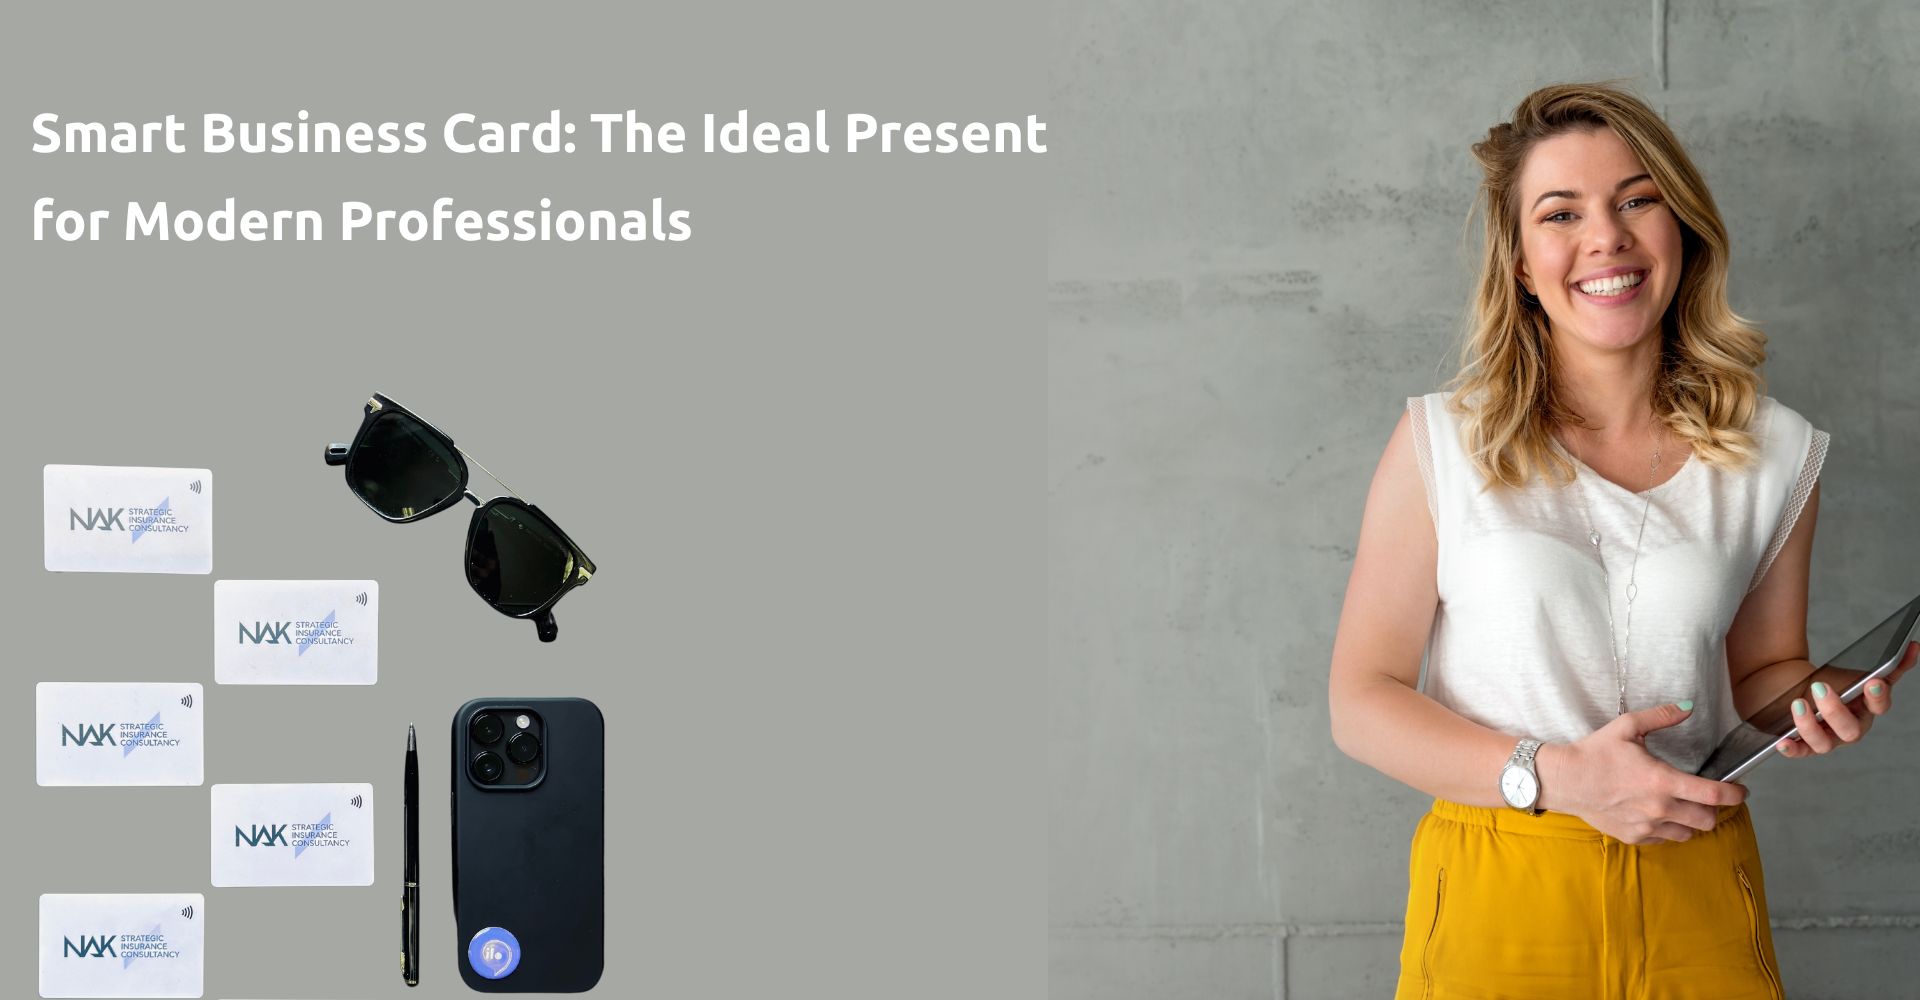 Γιατί η ilo card είναι το ιδανικό δώρο για τους σύγχρονους επαγγελματίες;